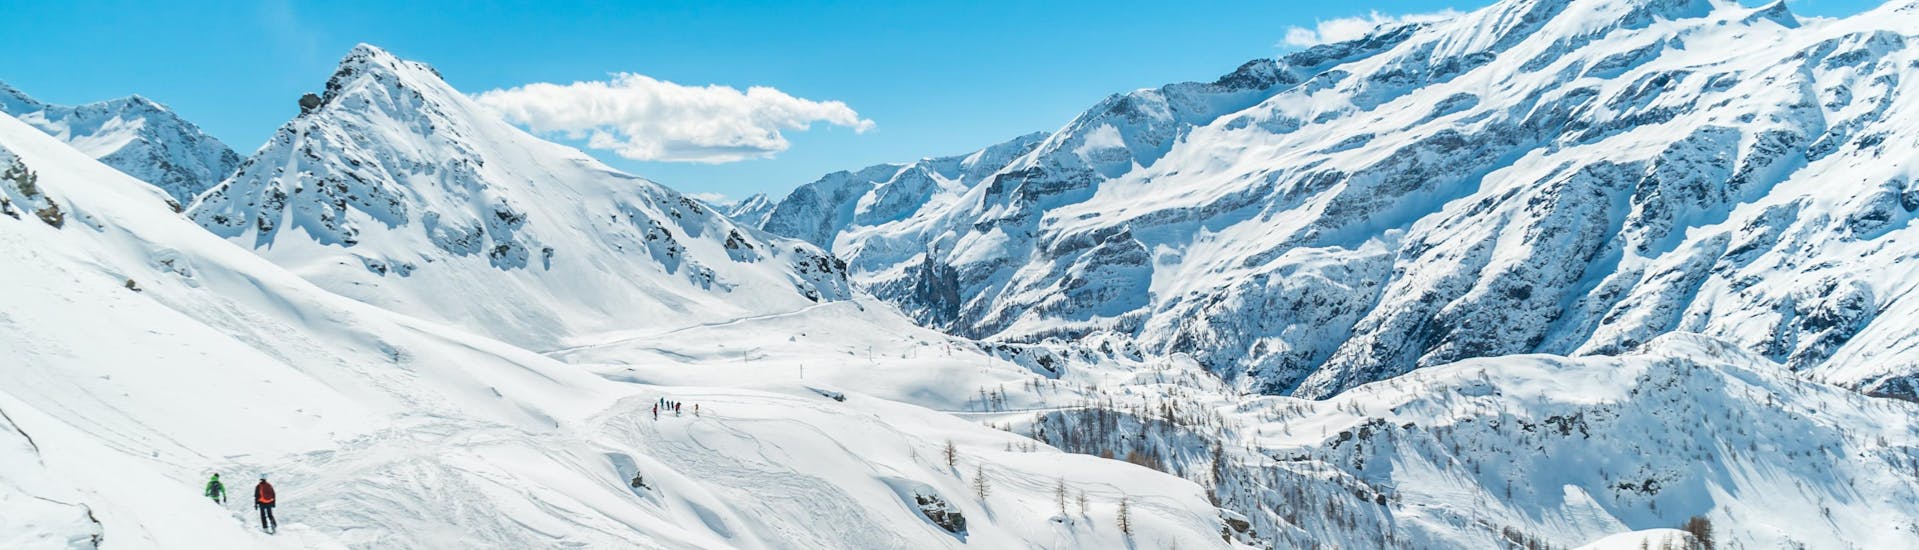 Alcuni sciatori sciano nel paesaggio innevato di Gressoney, nel comprensorio sciistico del Monte Rosa, dove le scuole di sci locali offrono le loro lezioni di sci.